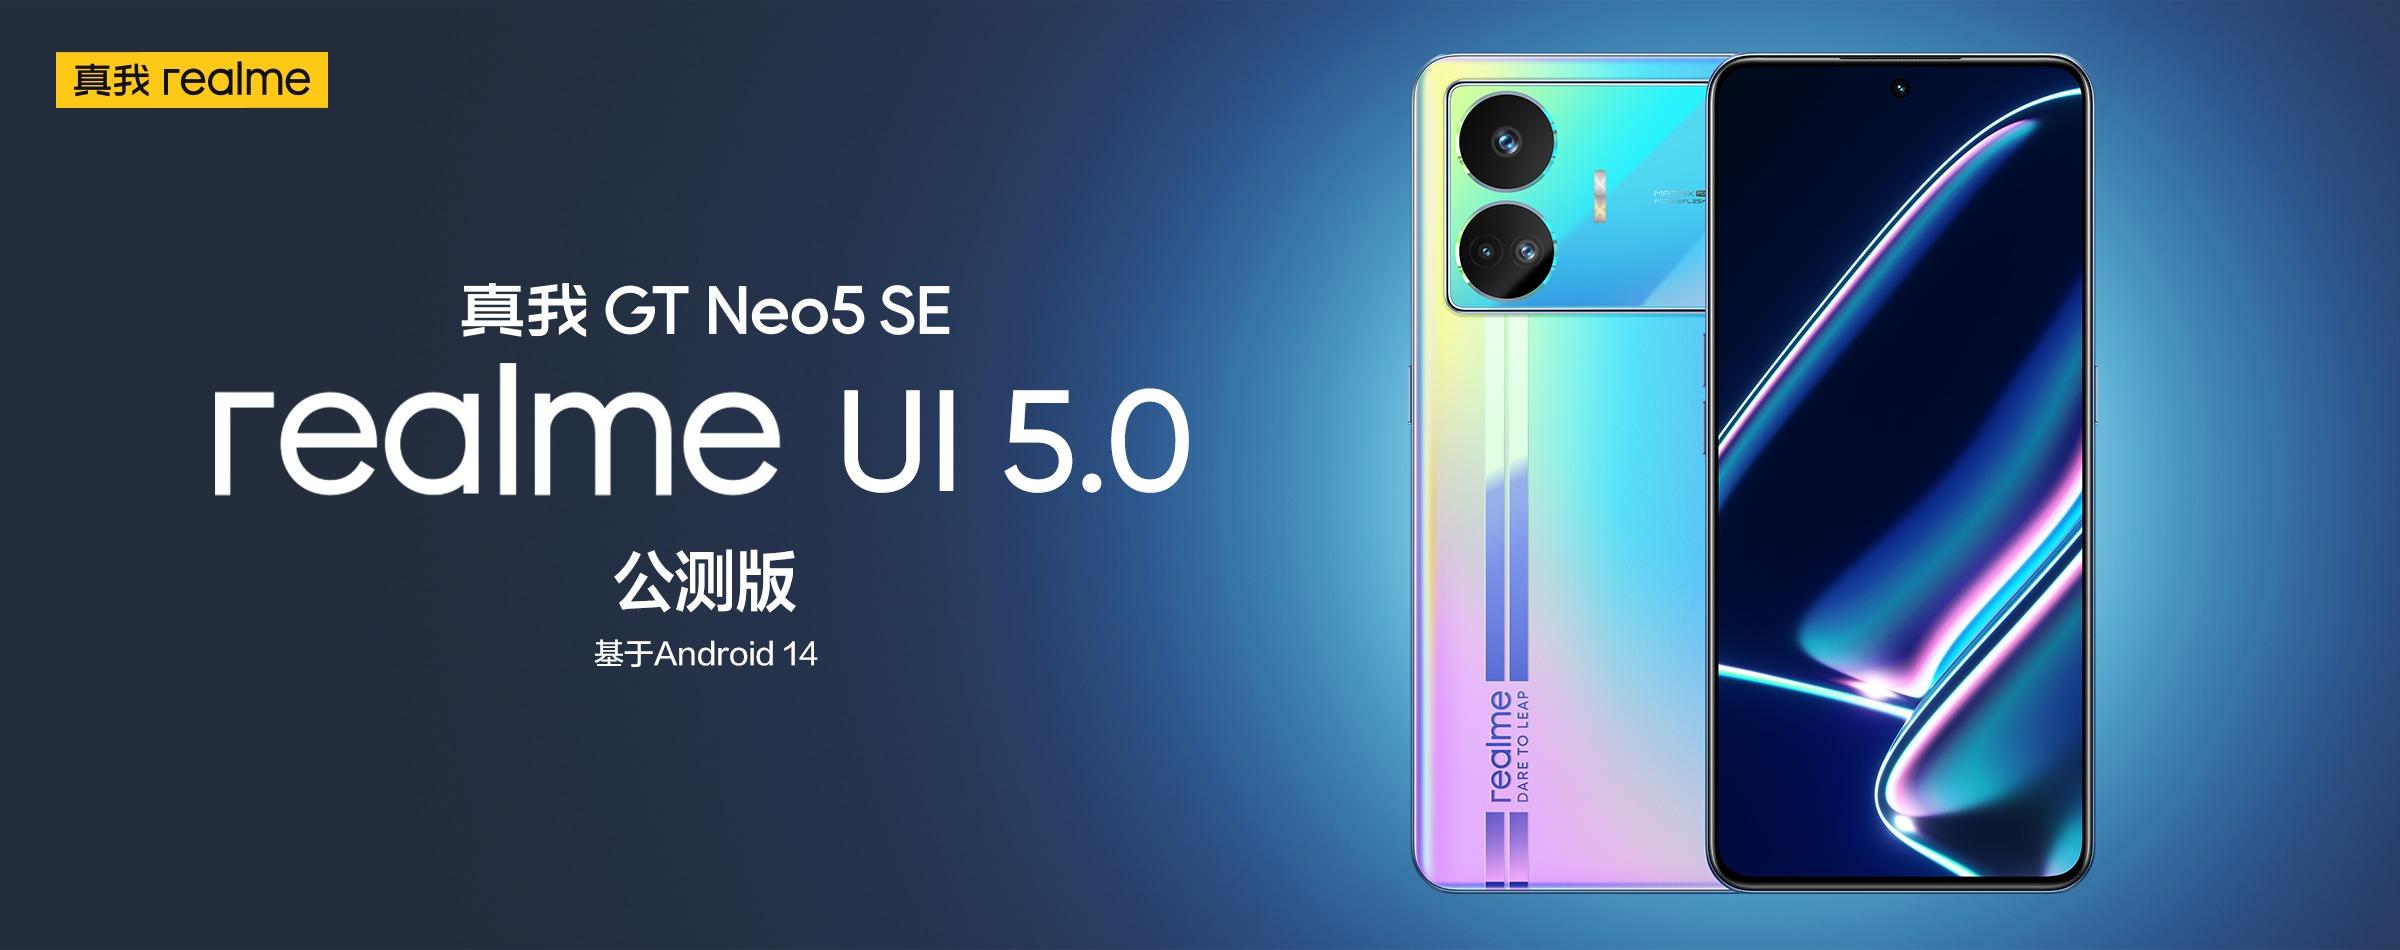 El realme GT Neo 5 SE ha recibido una versión beta de realme UI 5.0 basada en Android 14